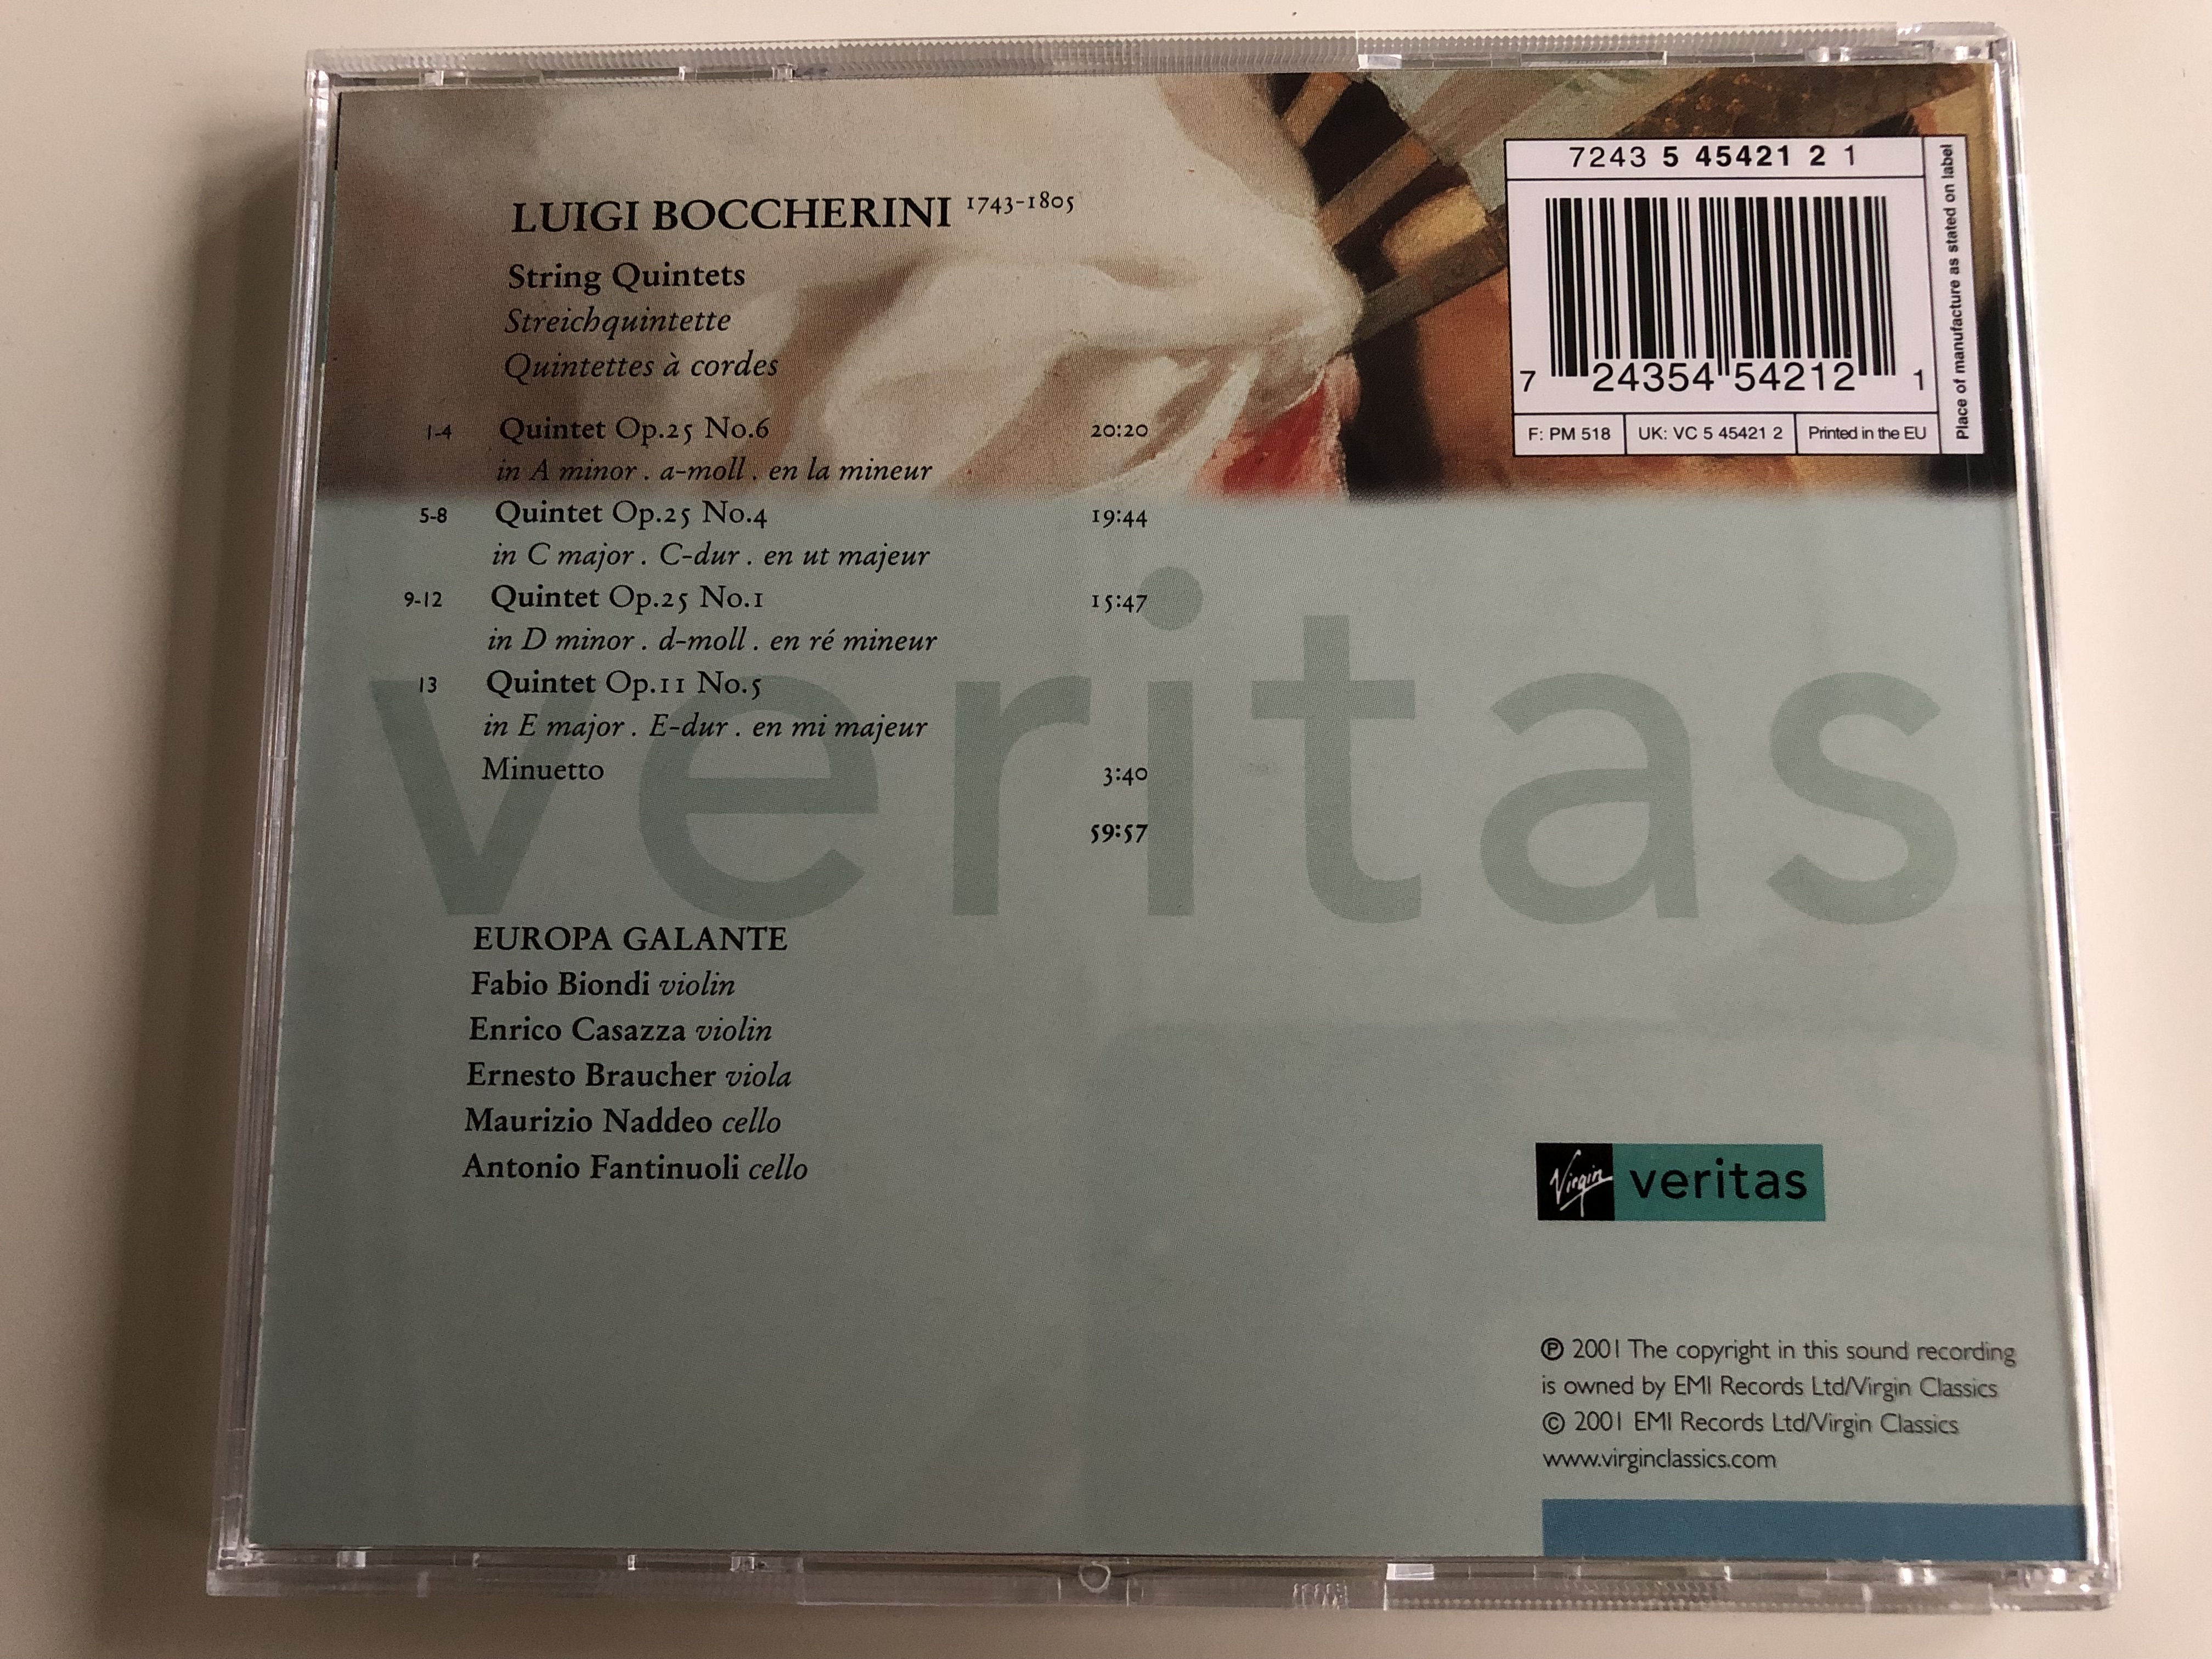 boccherini-string-quintets-minuet-in-a-europa-galante-fabio-biondi-enrico-casazza-ernesto-braucher-maurizio-naddeo-antonio-fantinuoli-audio-cd-2001-virgin-classics-7-.jpg